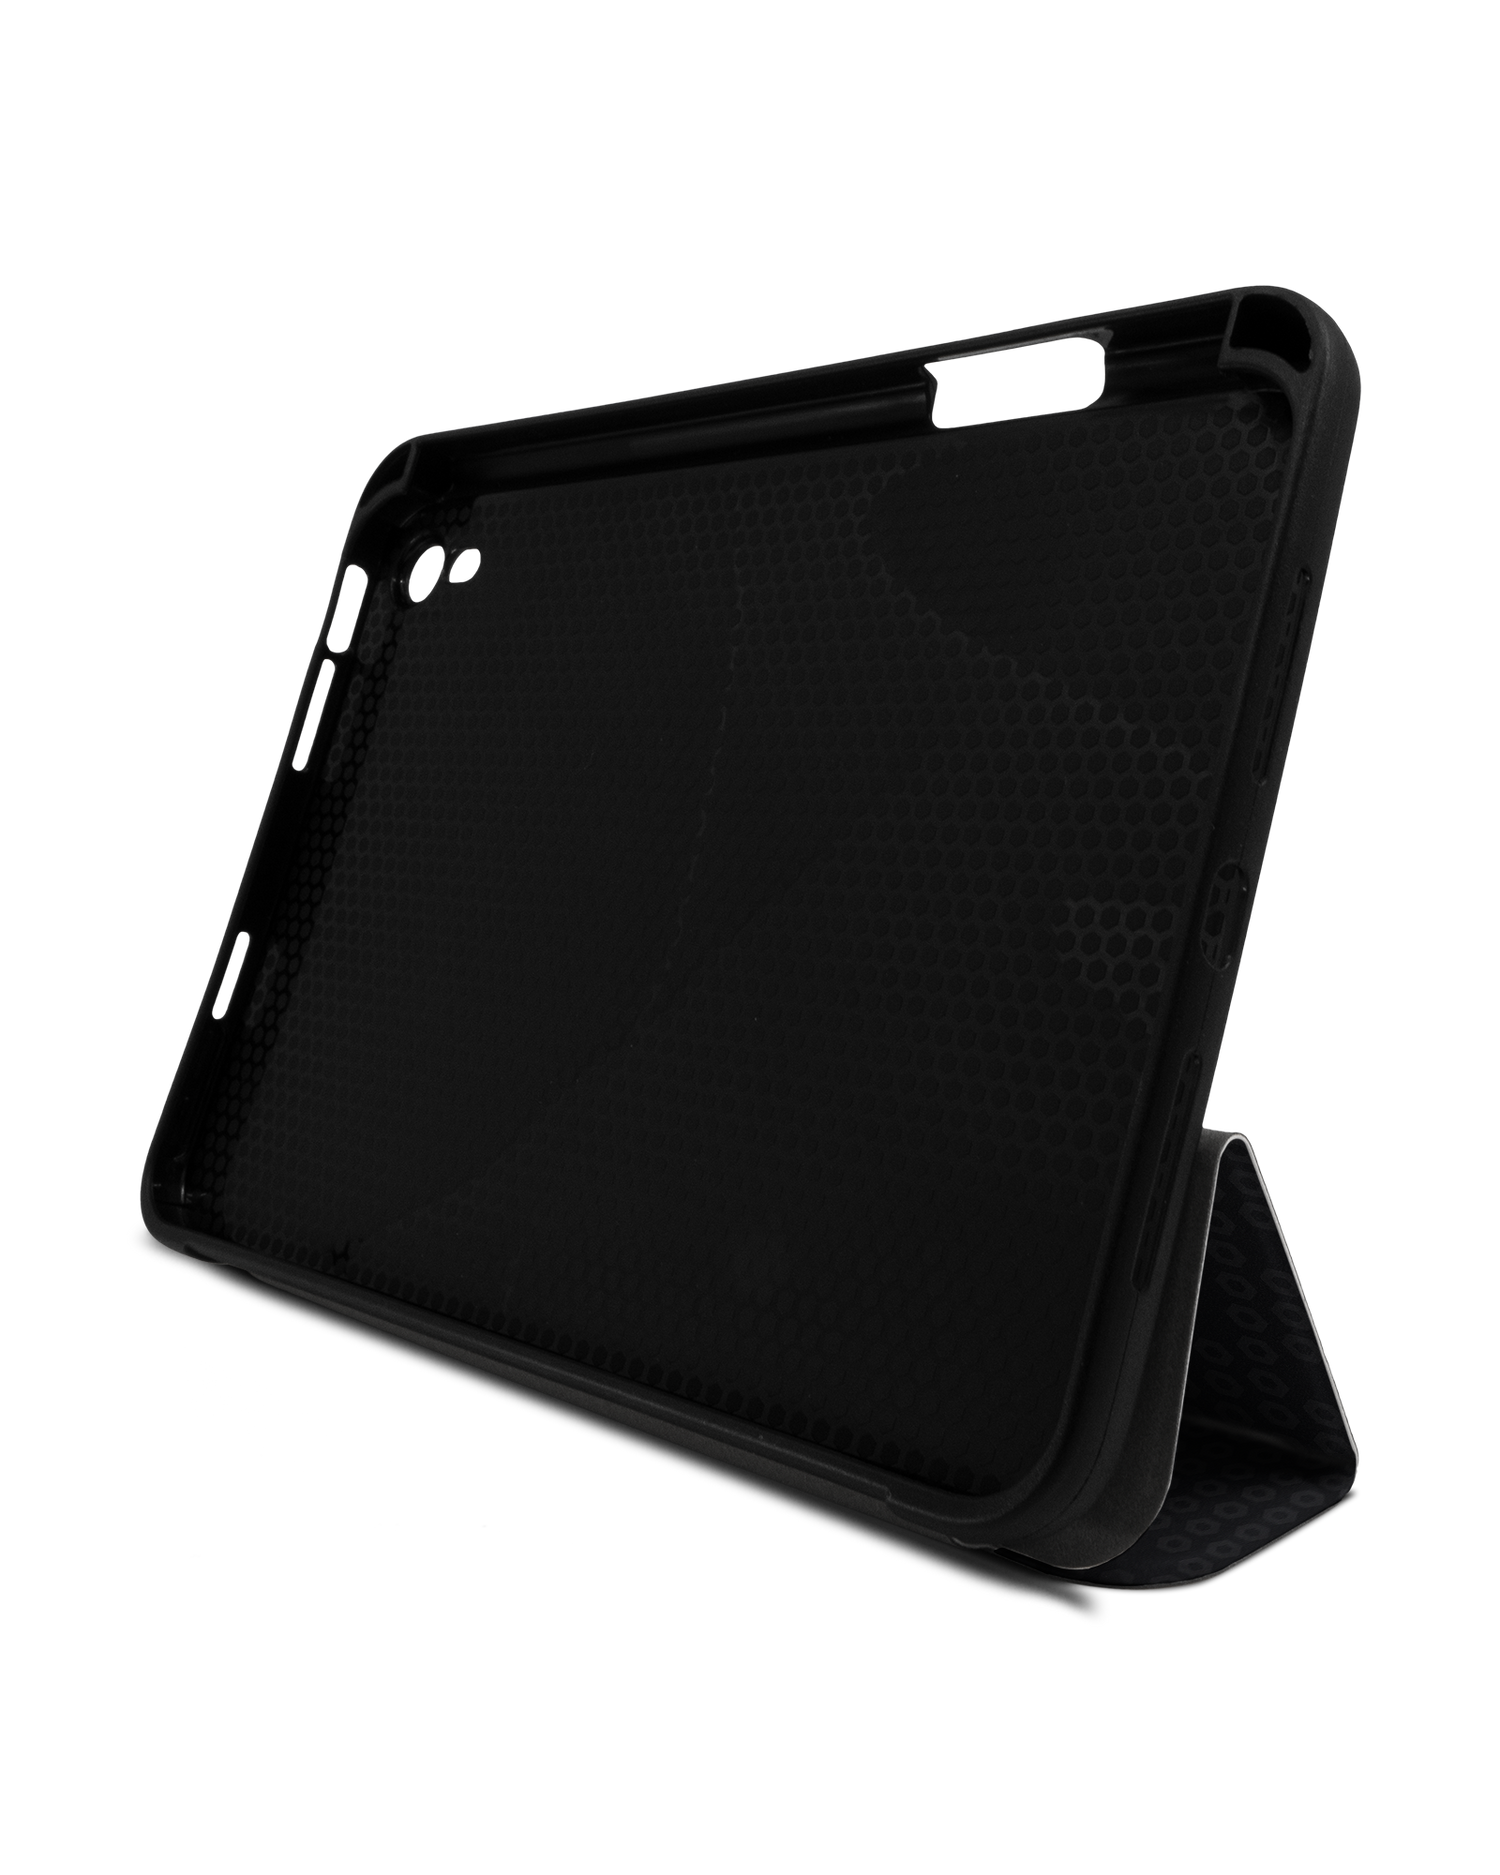 Spec Ops Dark iPad Hülle mit Stifthalter Apple iPad mini 6 (2021): Aufgestellt im Querformat von vorne